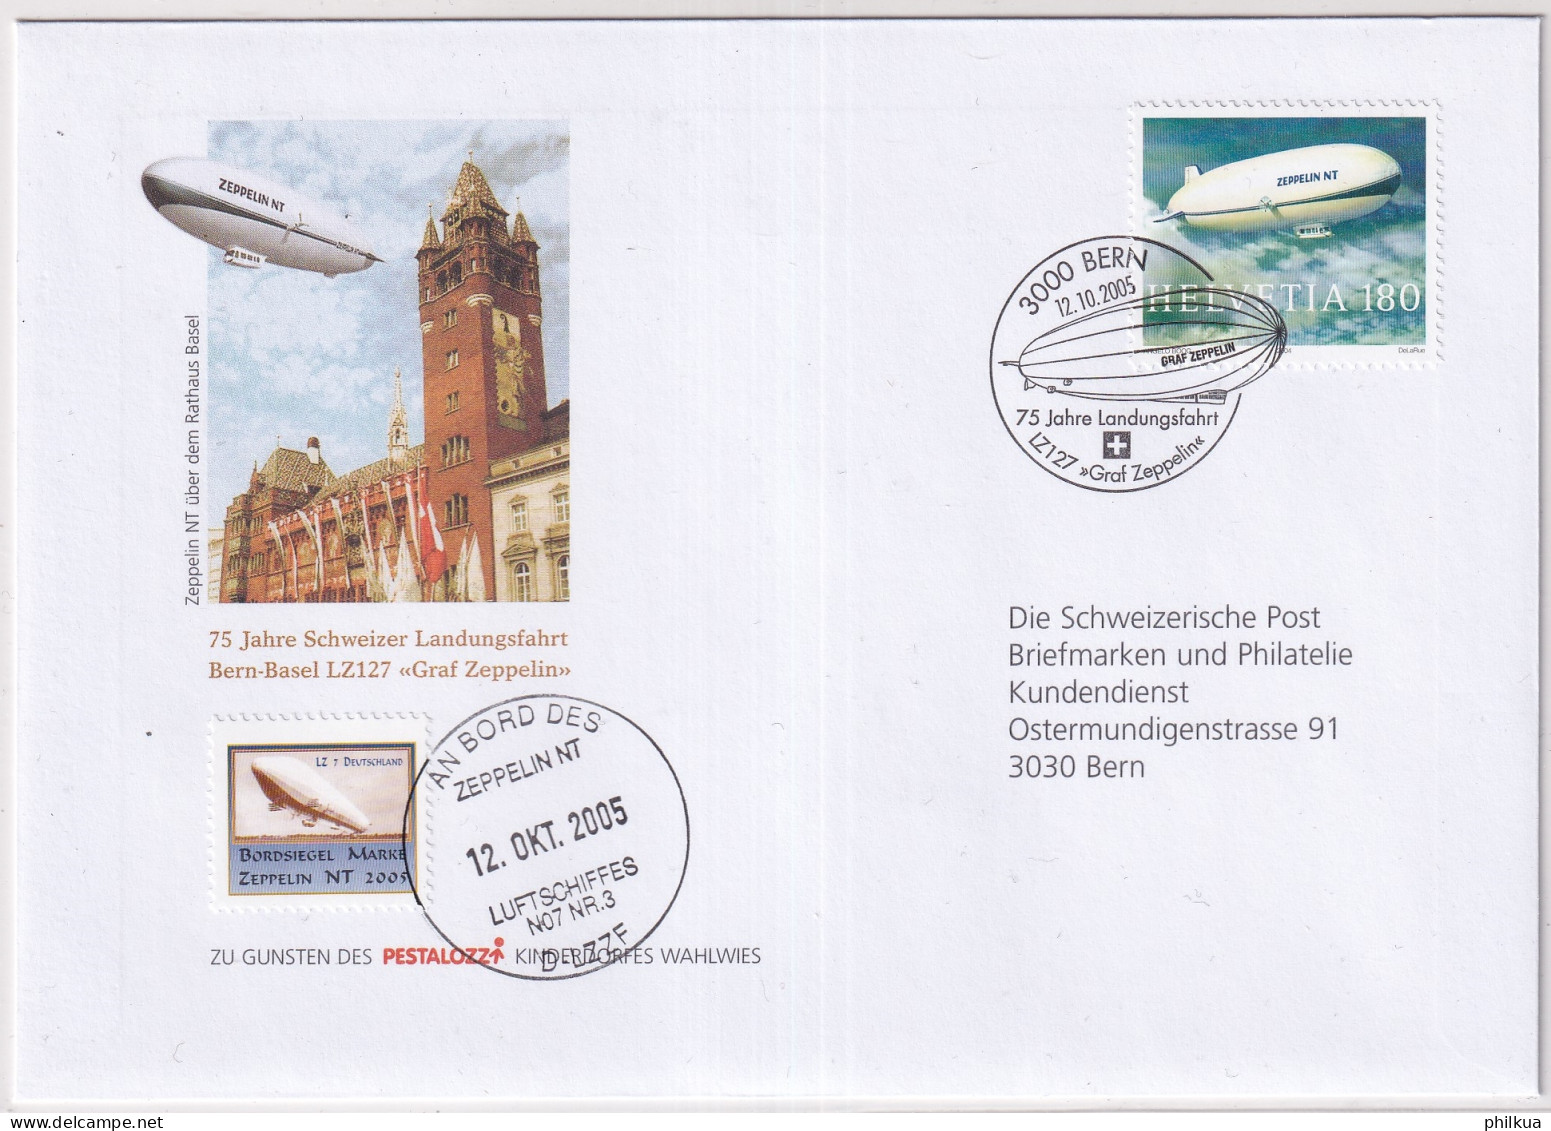 1121 / Michel 1879 Auf Illustriertem  Brief Mit Sonderstempel An Bprd Des Zeppelin NT Mit Vignette - Storia Postale